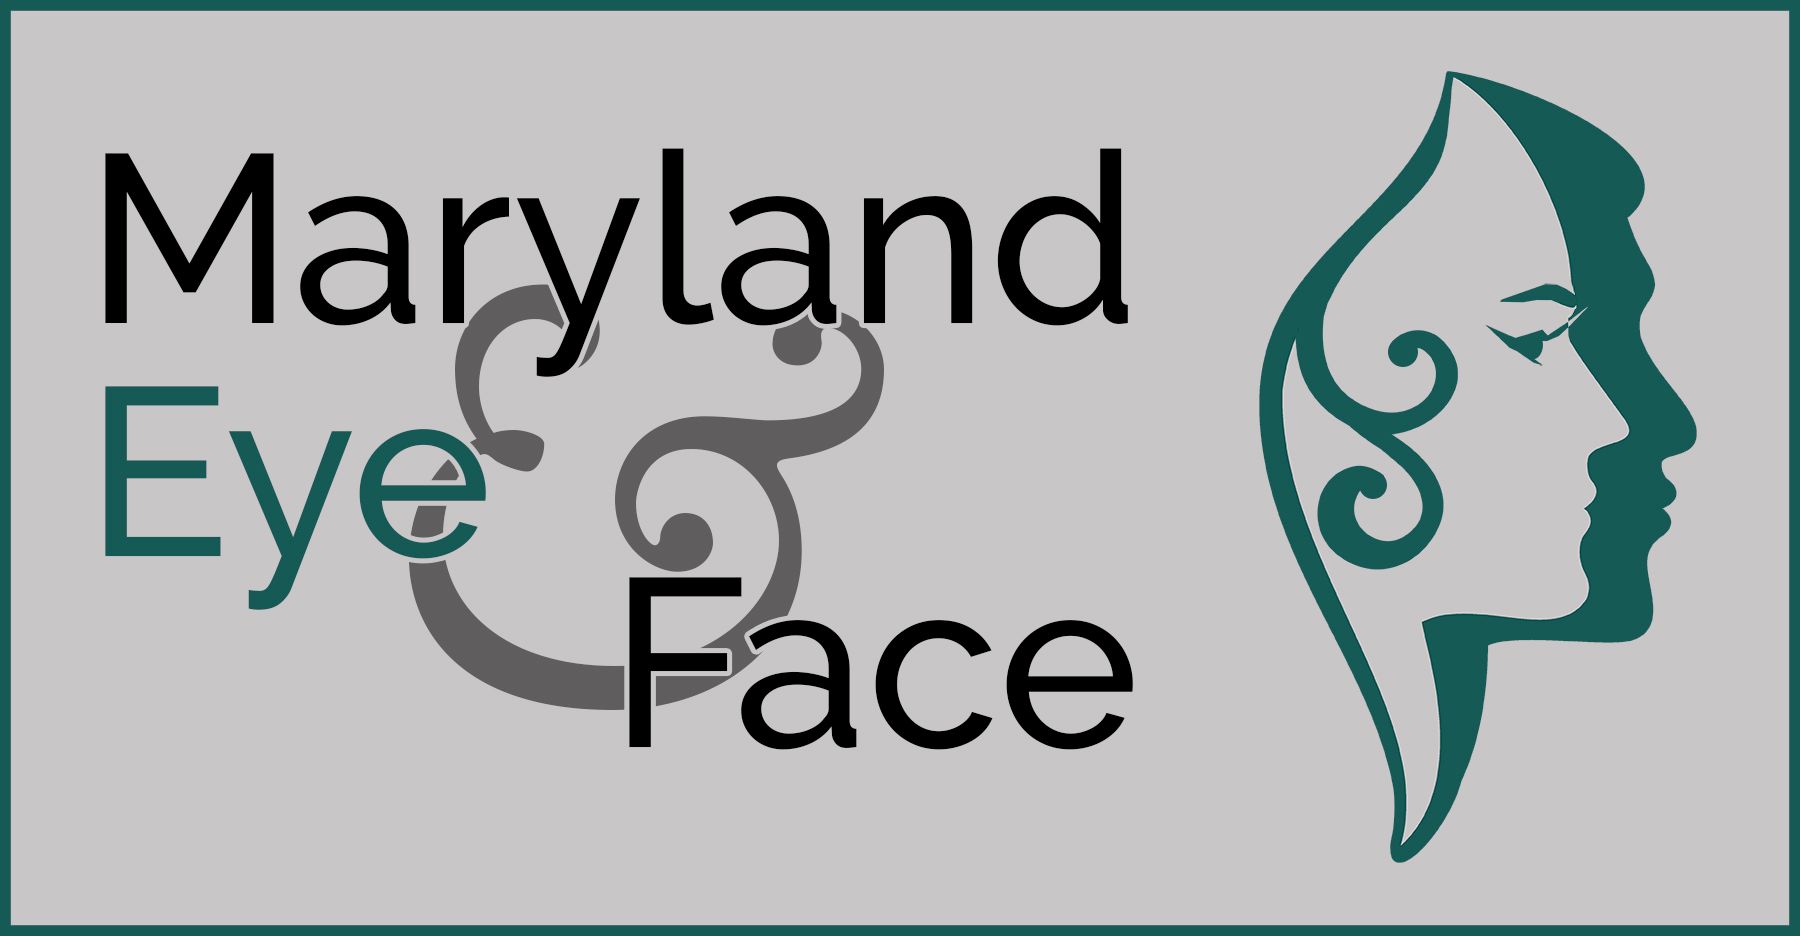 Maryland Eye & Face